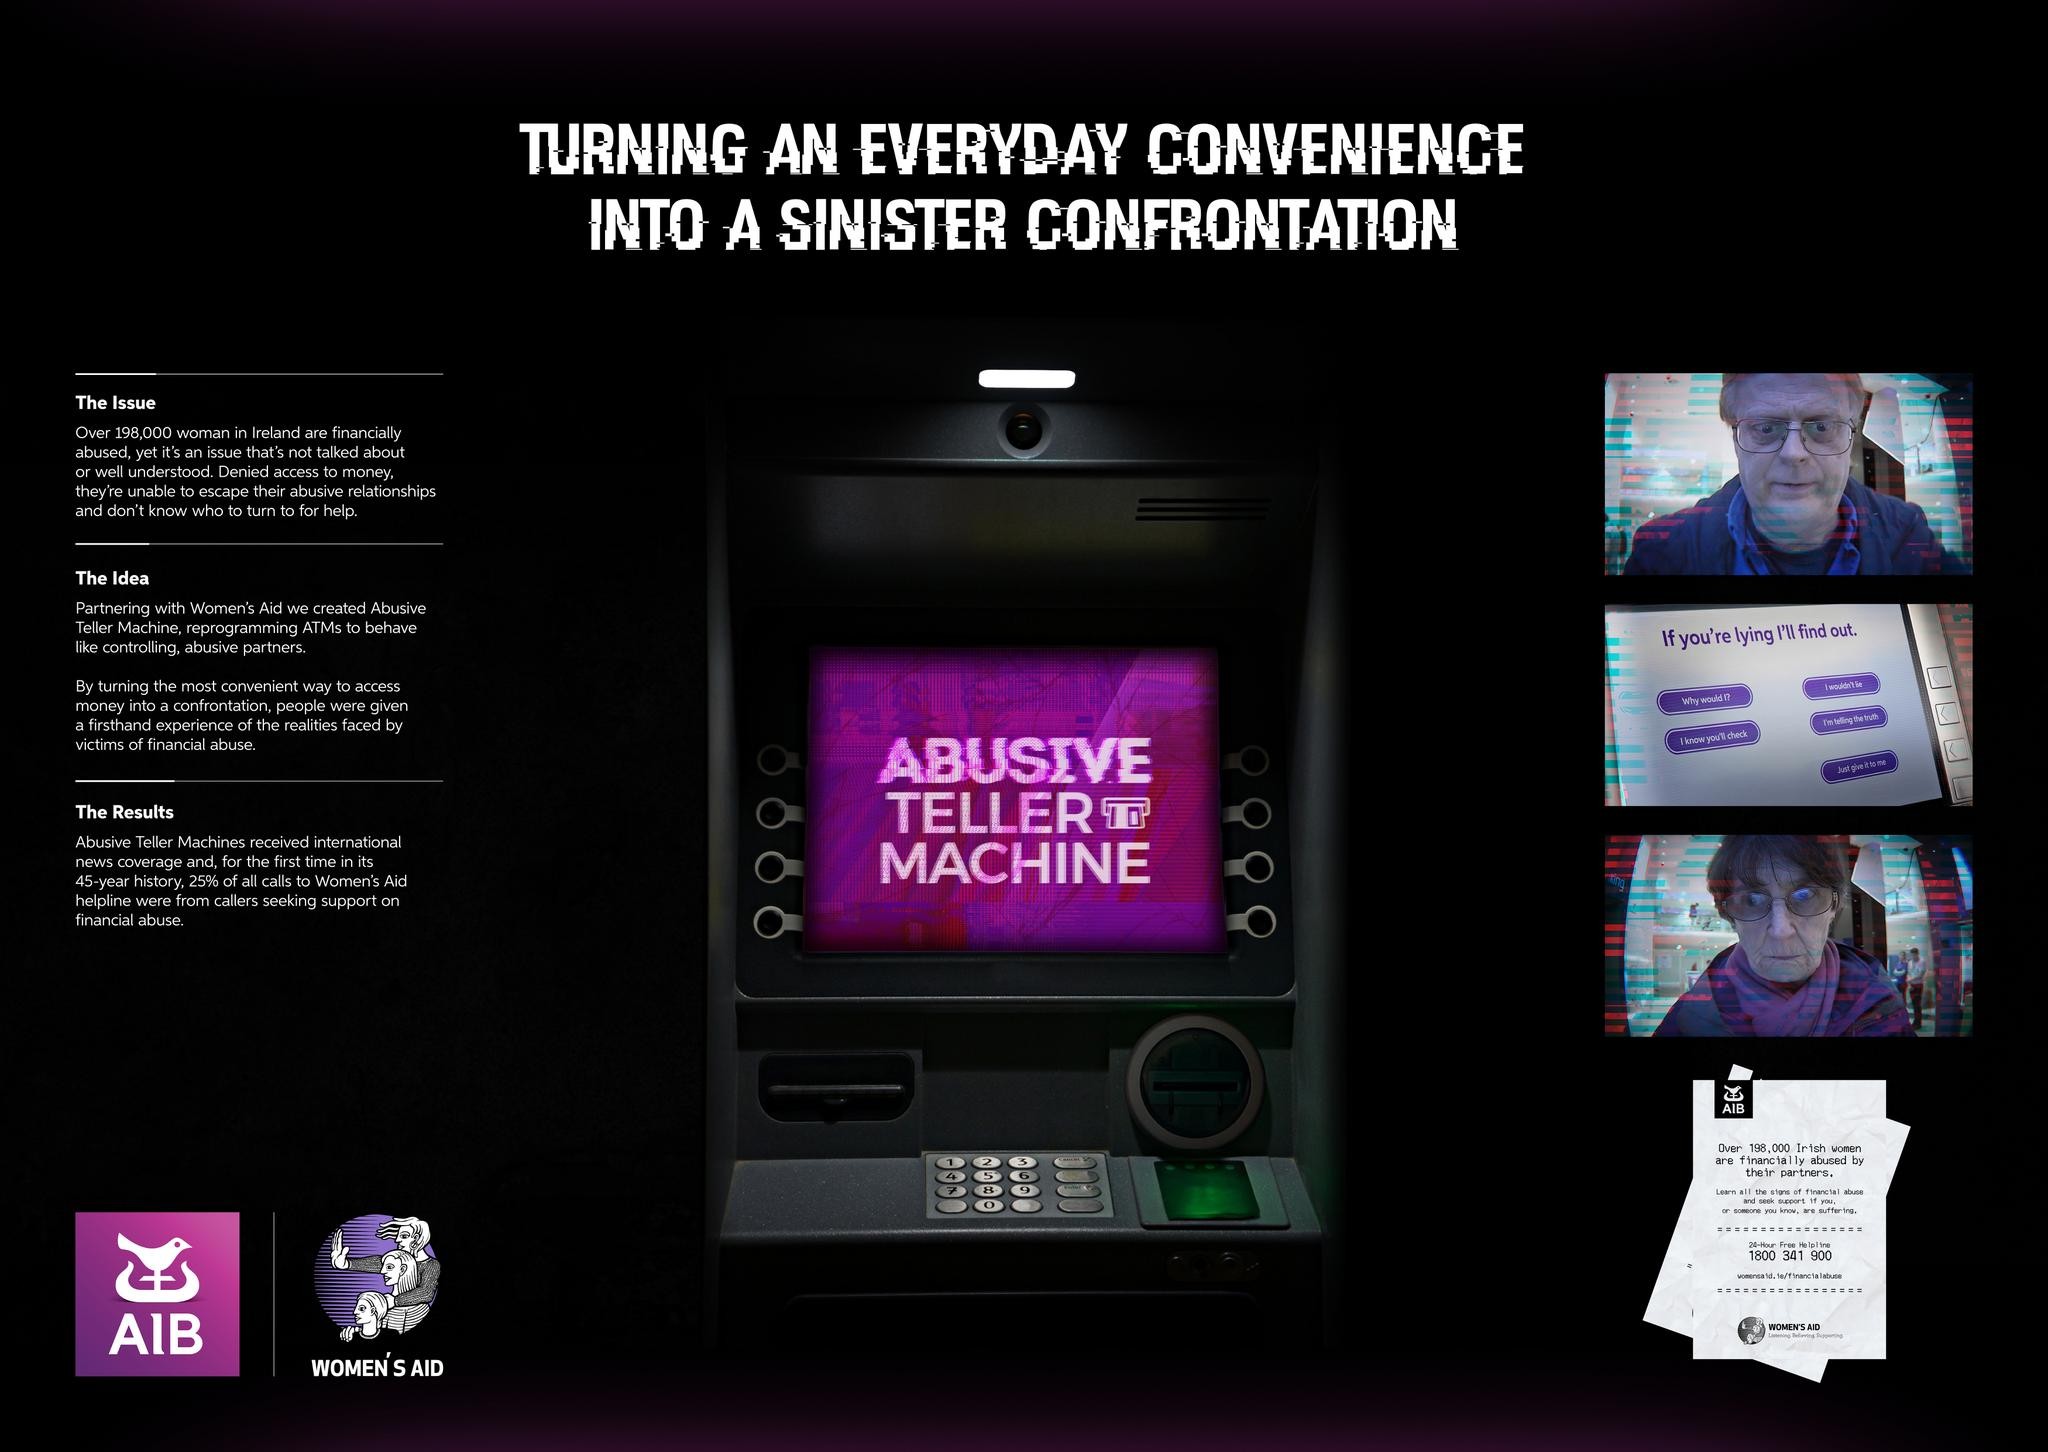 AIB - Abusive Teller Machines